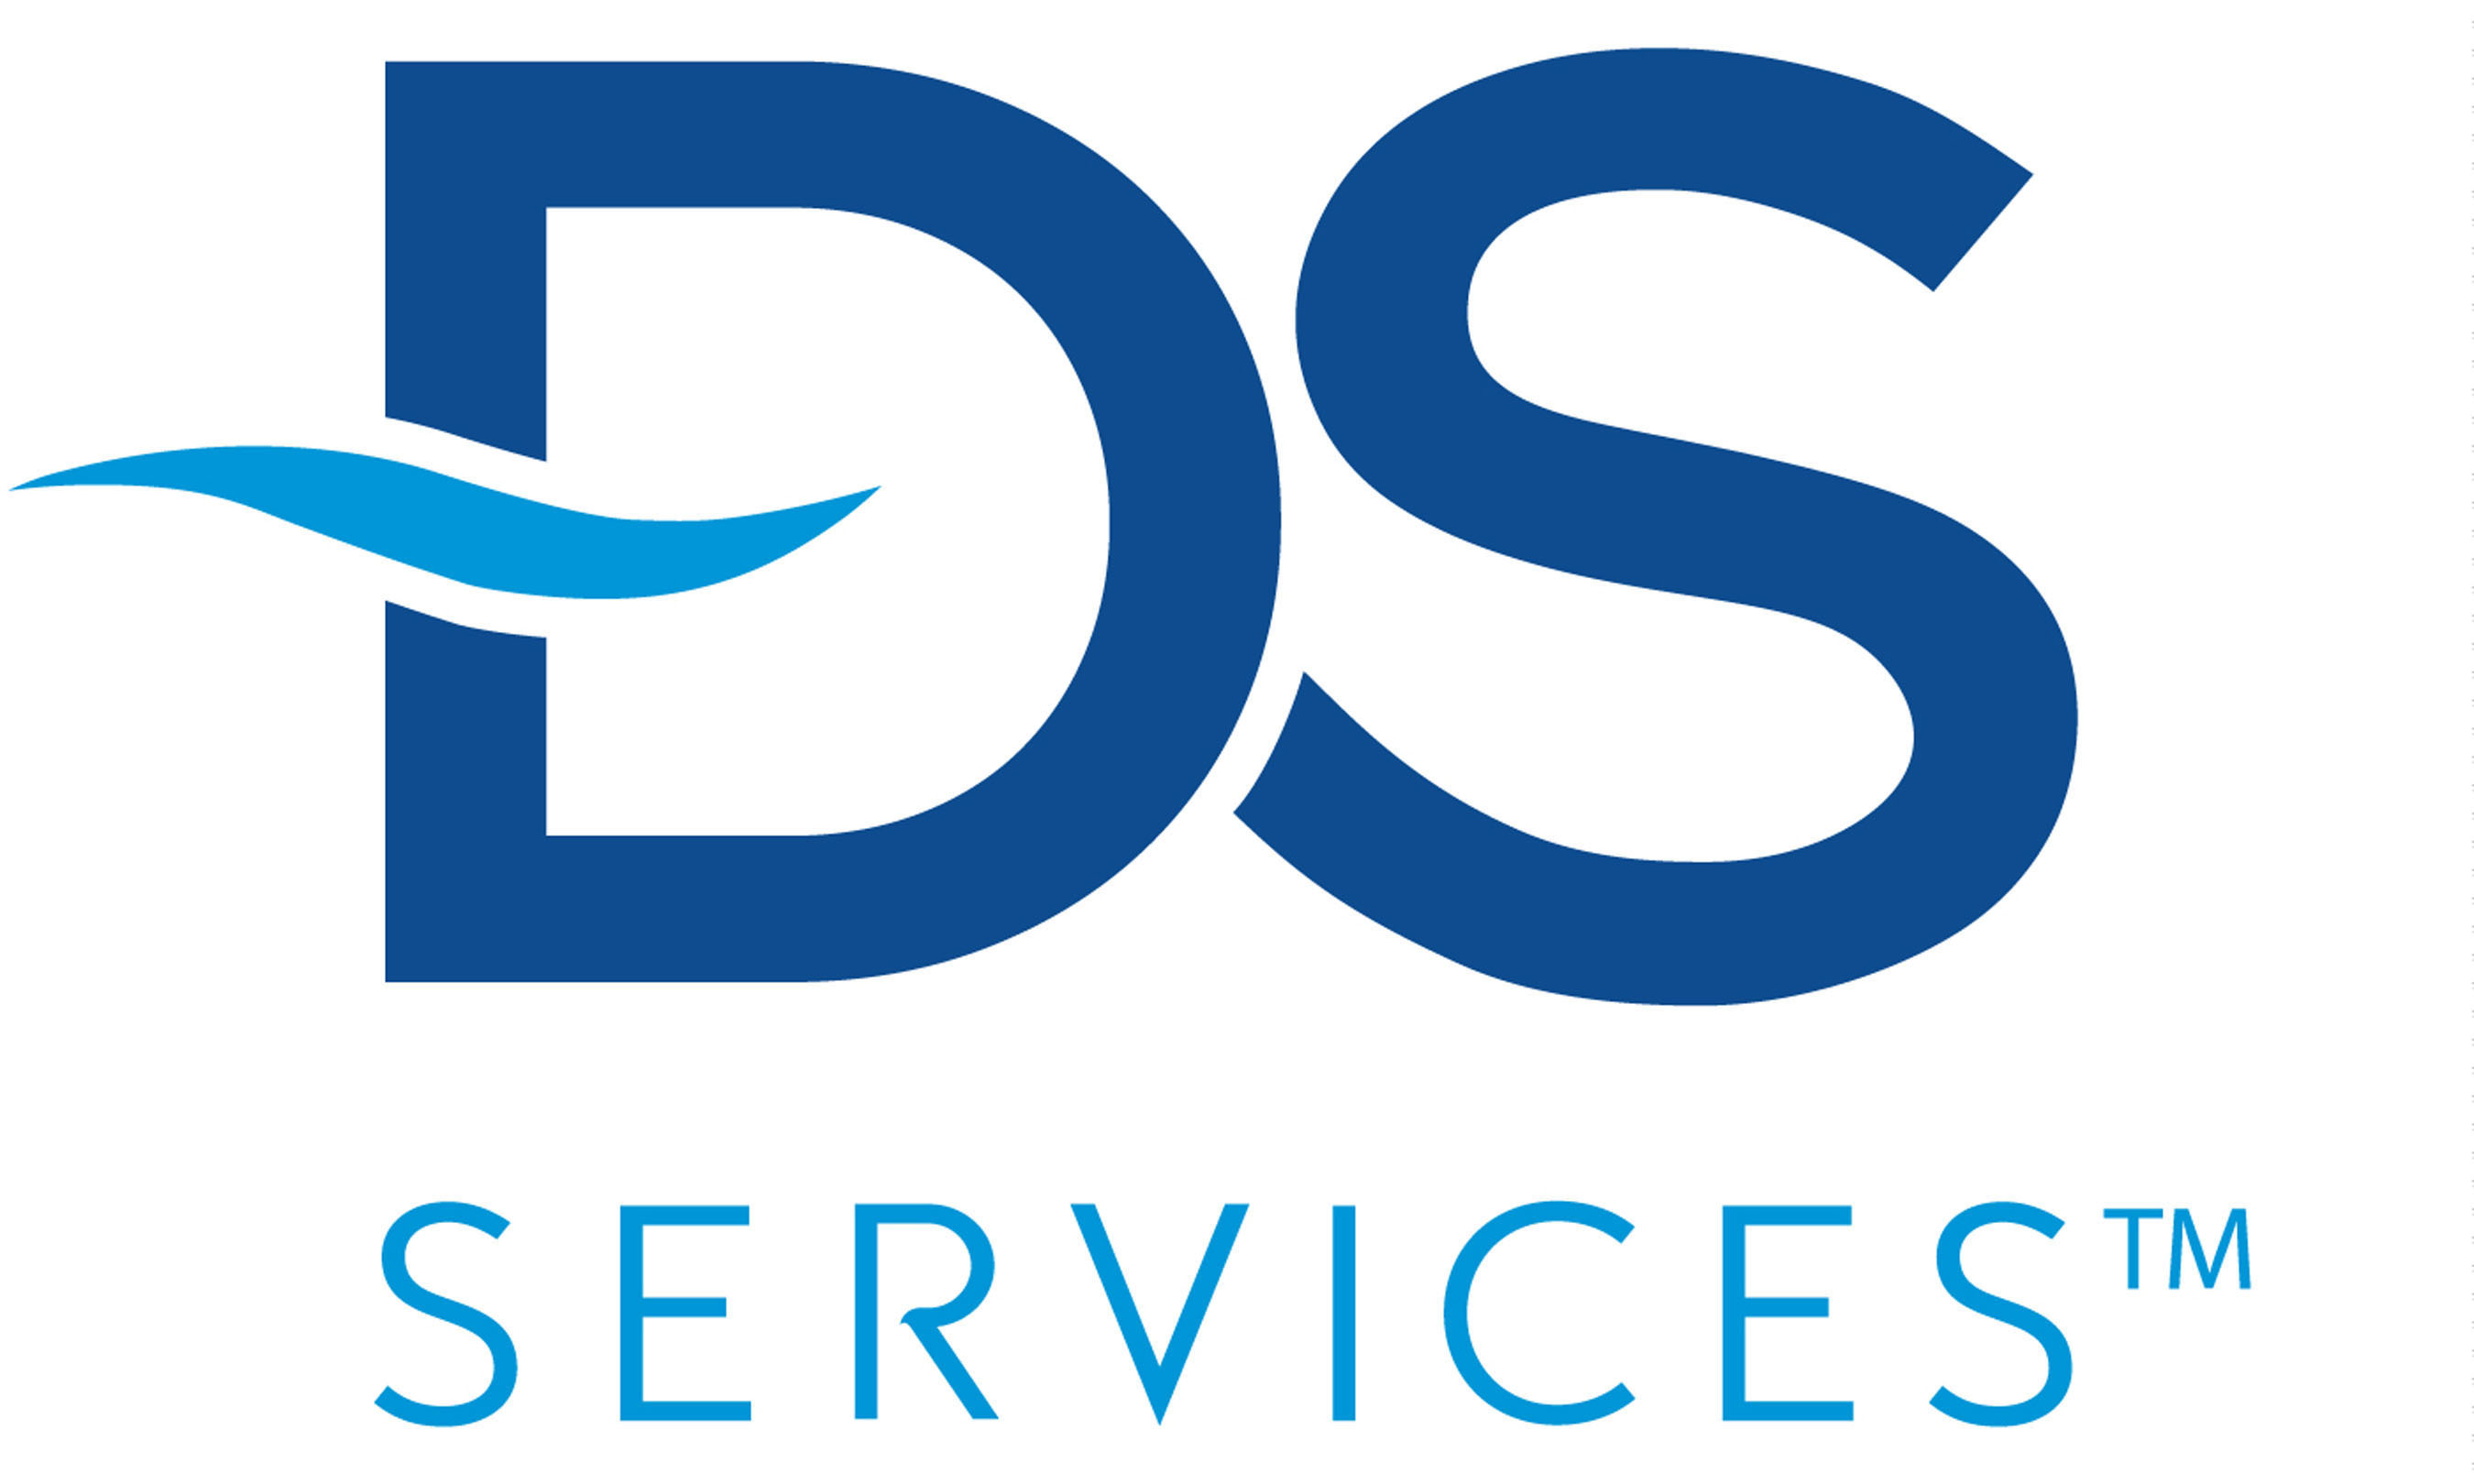 DS Services logo